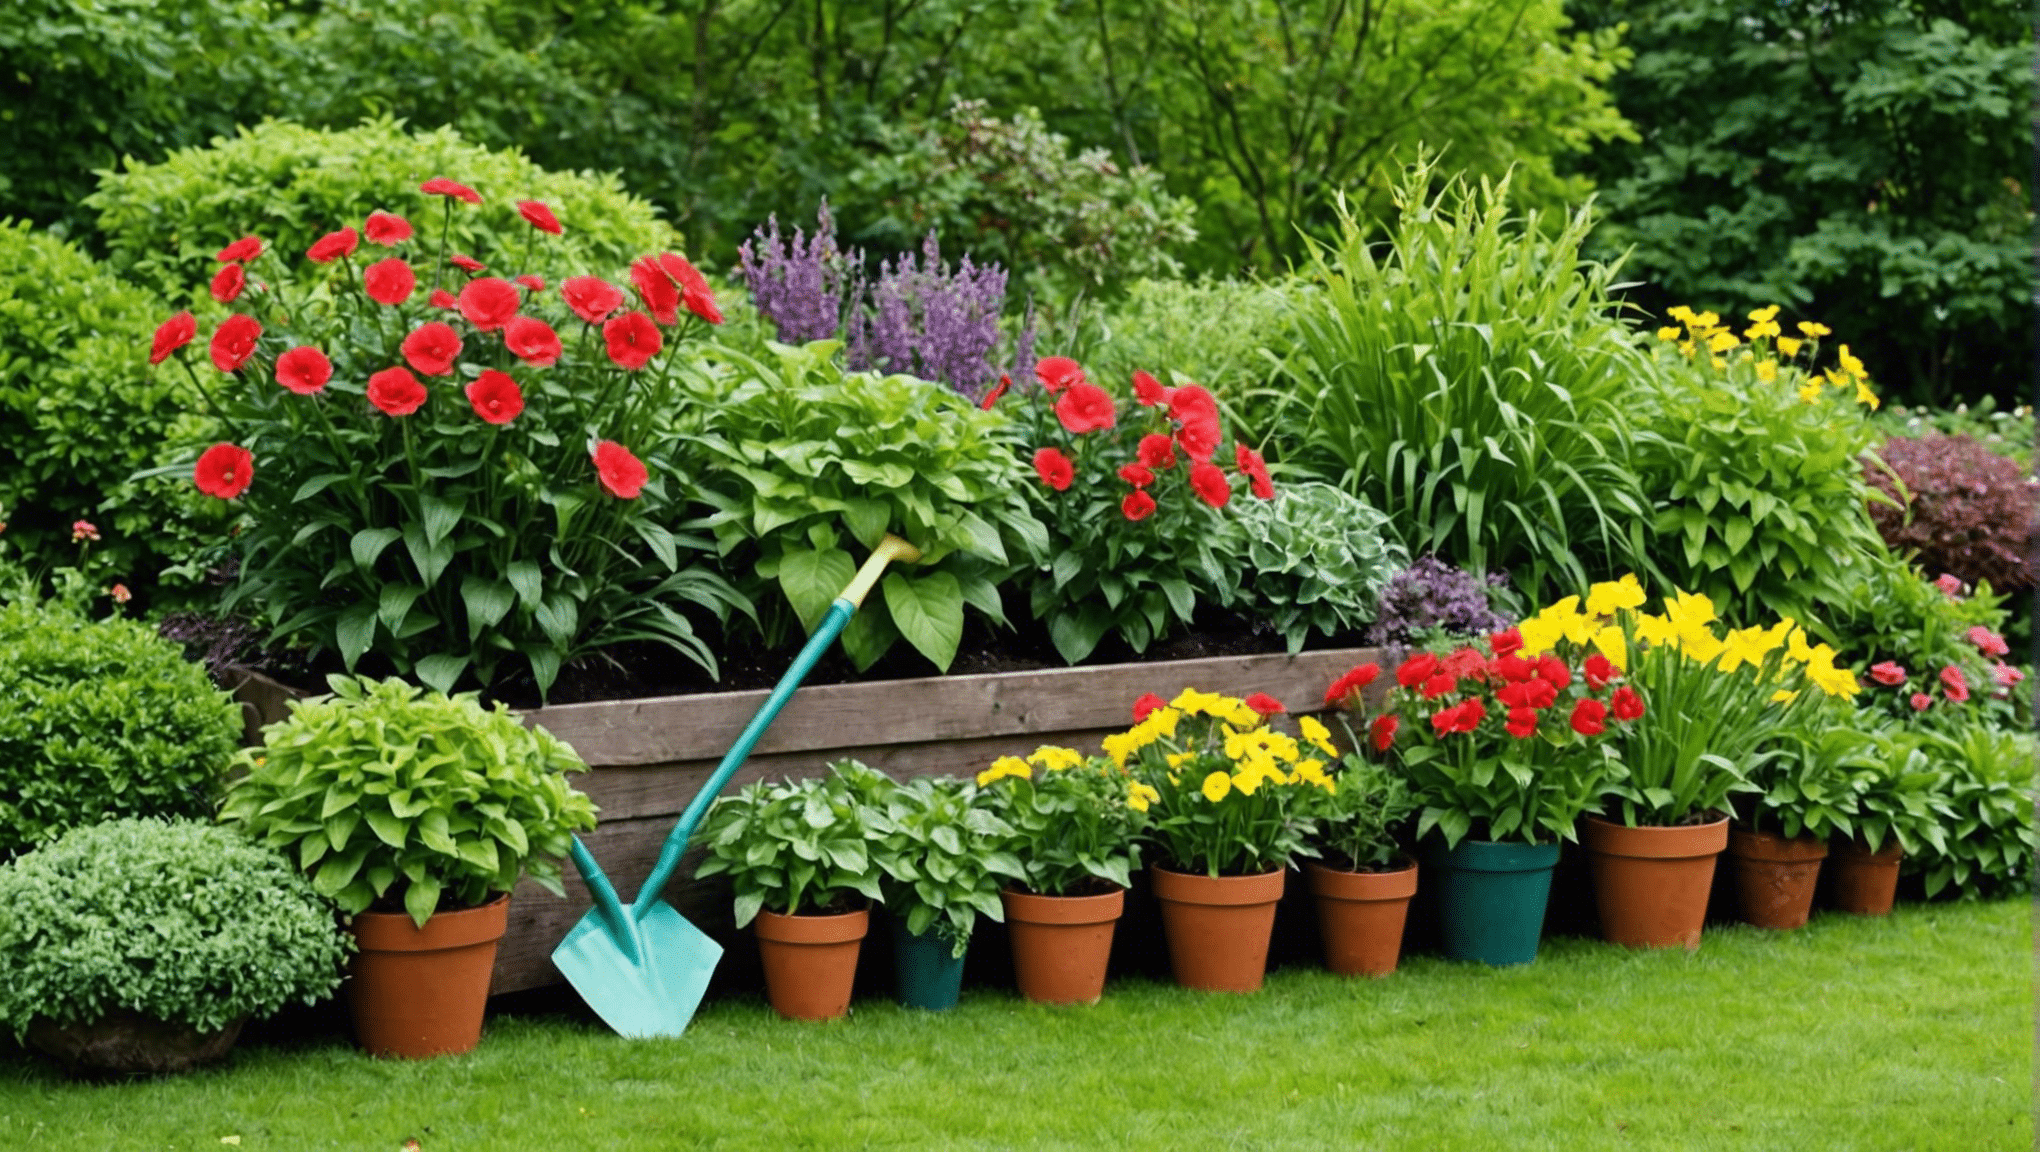 encontre inspiração e ótimas ideias para presentes de jardinagem com nossa coleção selecionada de produtos perfeitos para qualquer entusiasta do polegar verde.